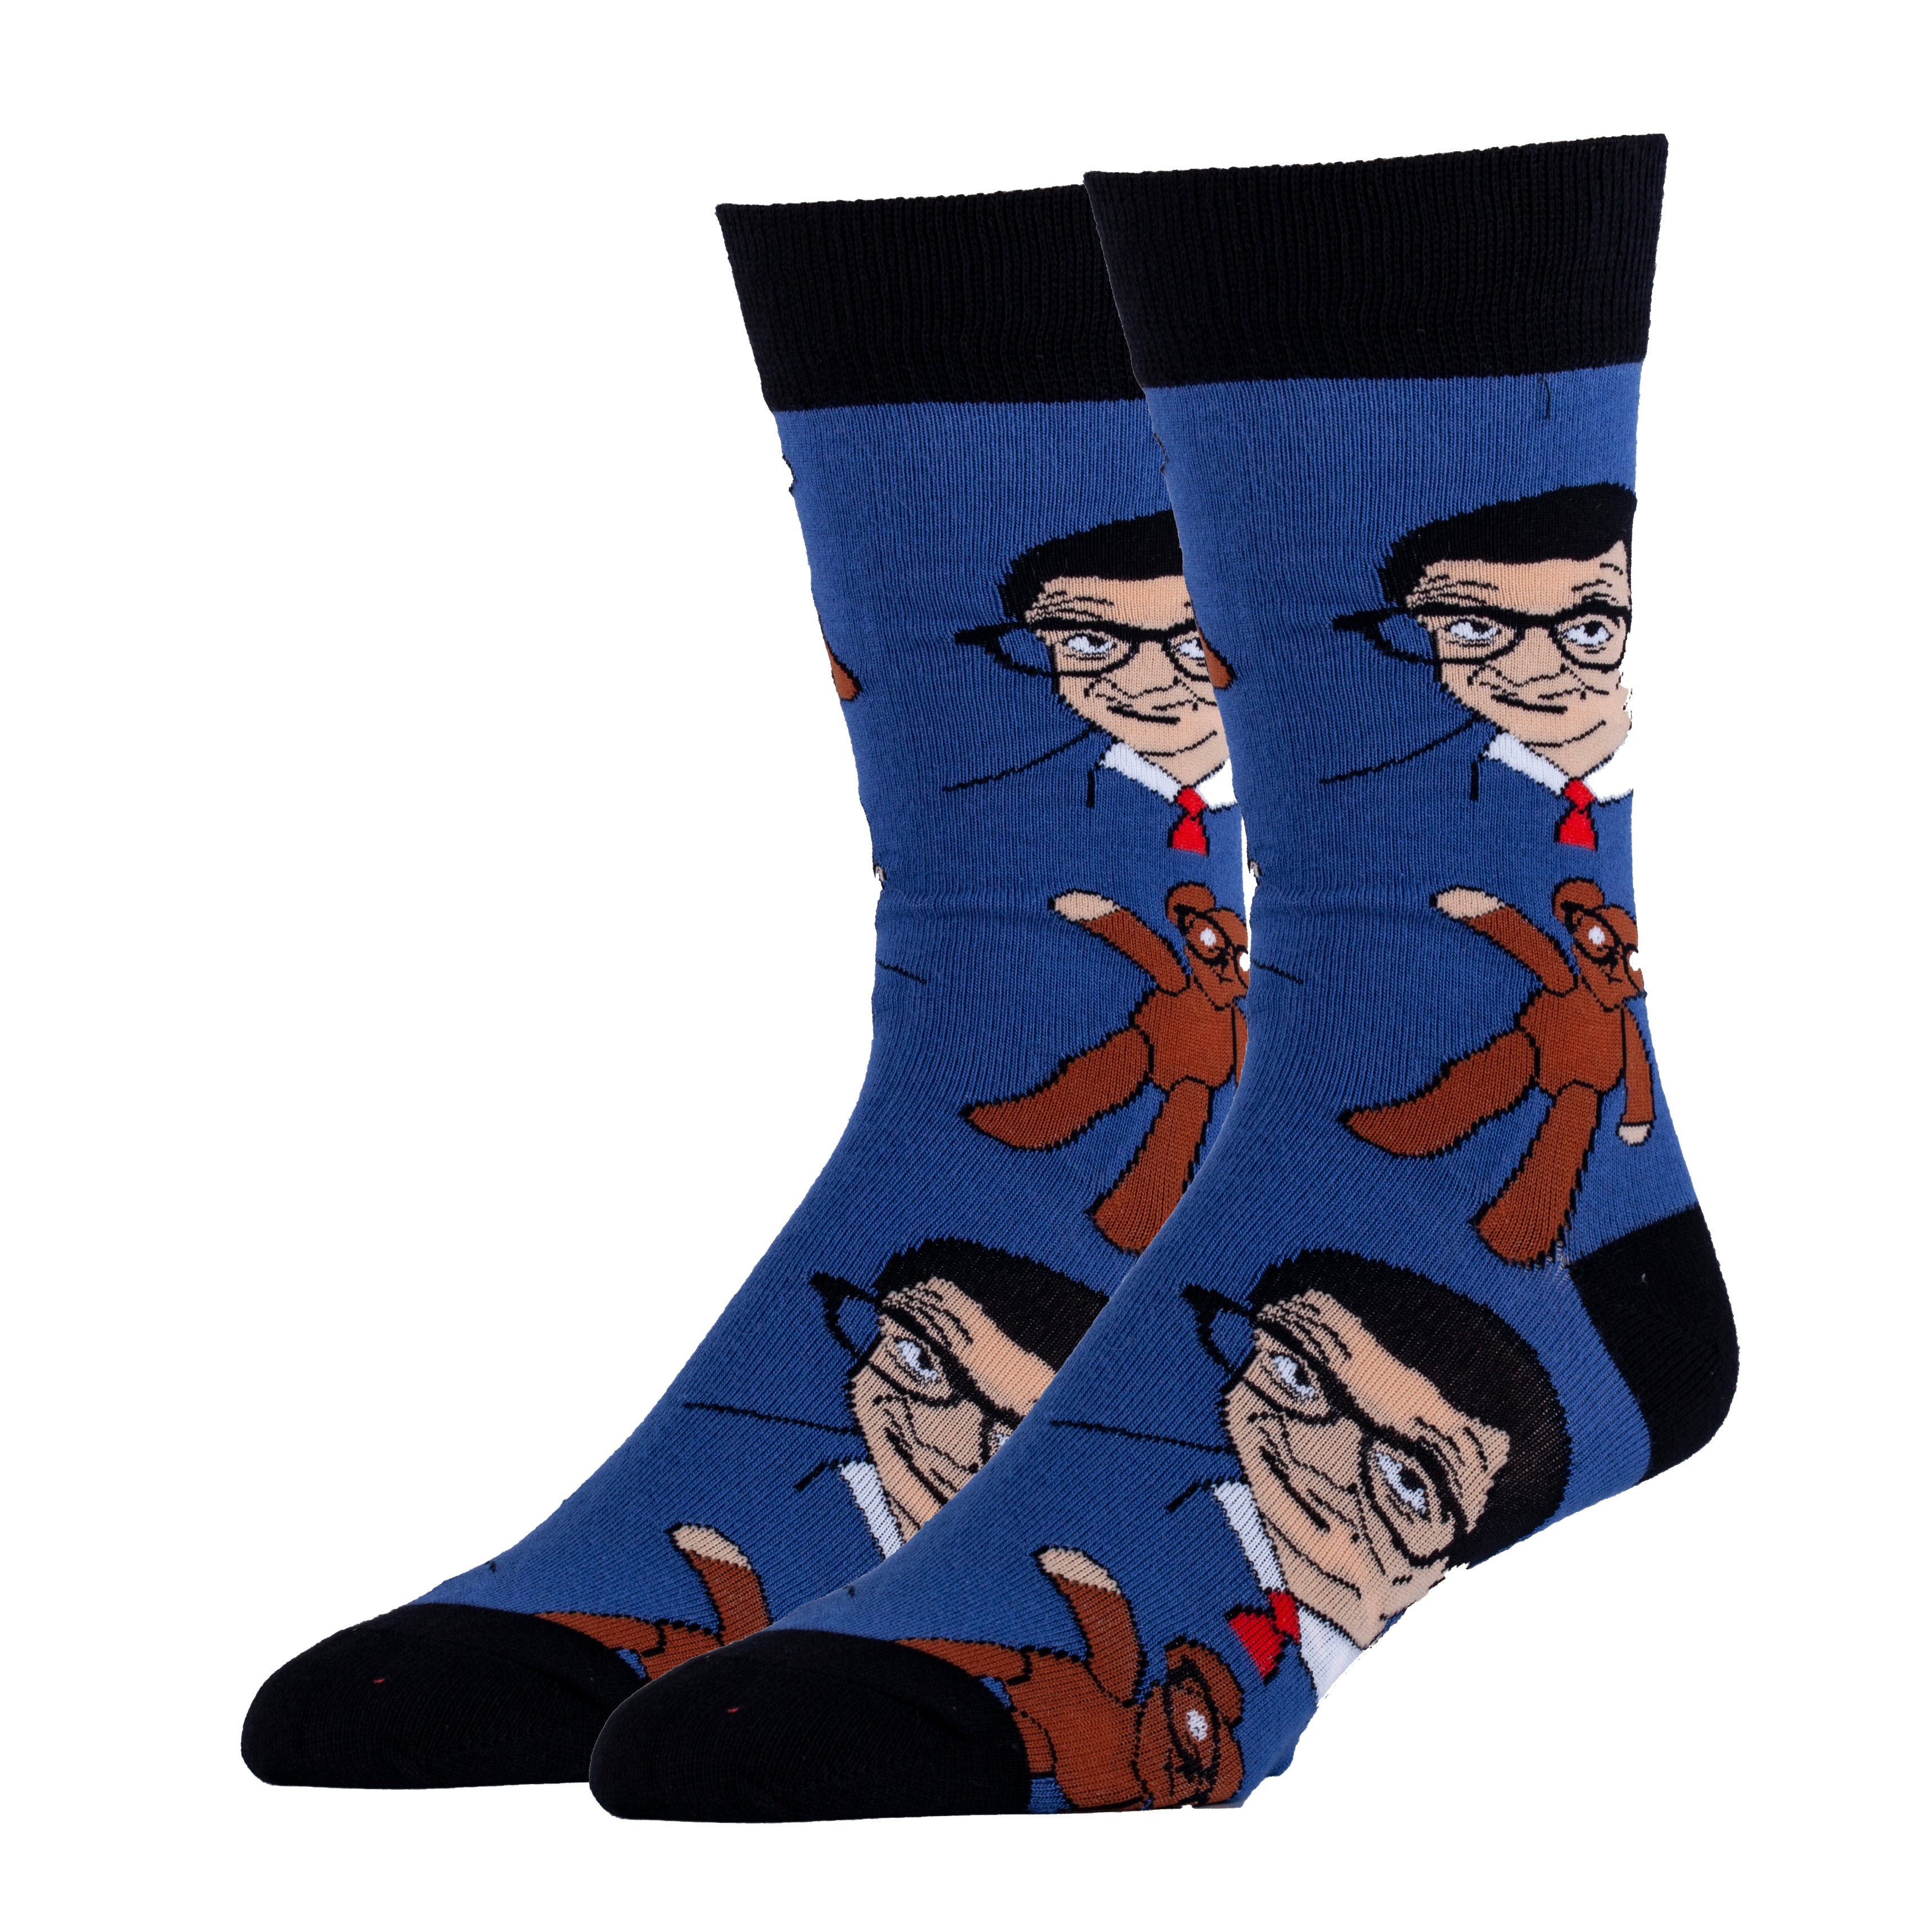 Mr Bean & Teddy Blue Socks | TV Show Socks for Men